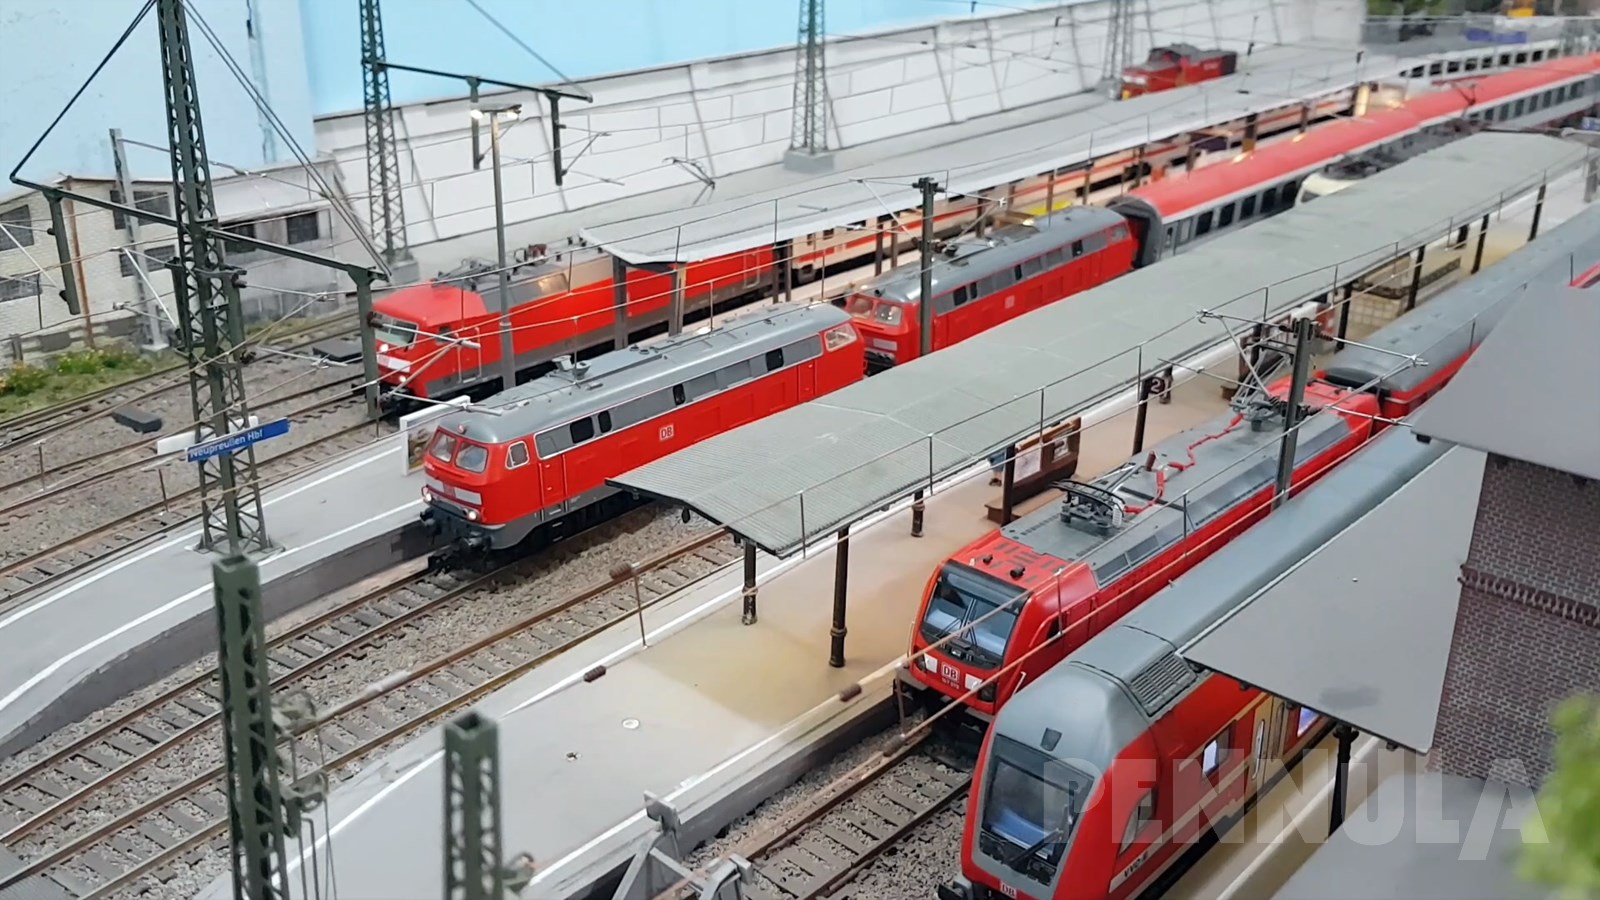 Modelleisenbahn Neupreußen - Eine wunderschöne Spur H0 Anlage mit Arduino-Modellbahn-Steuerung